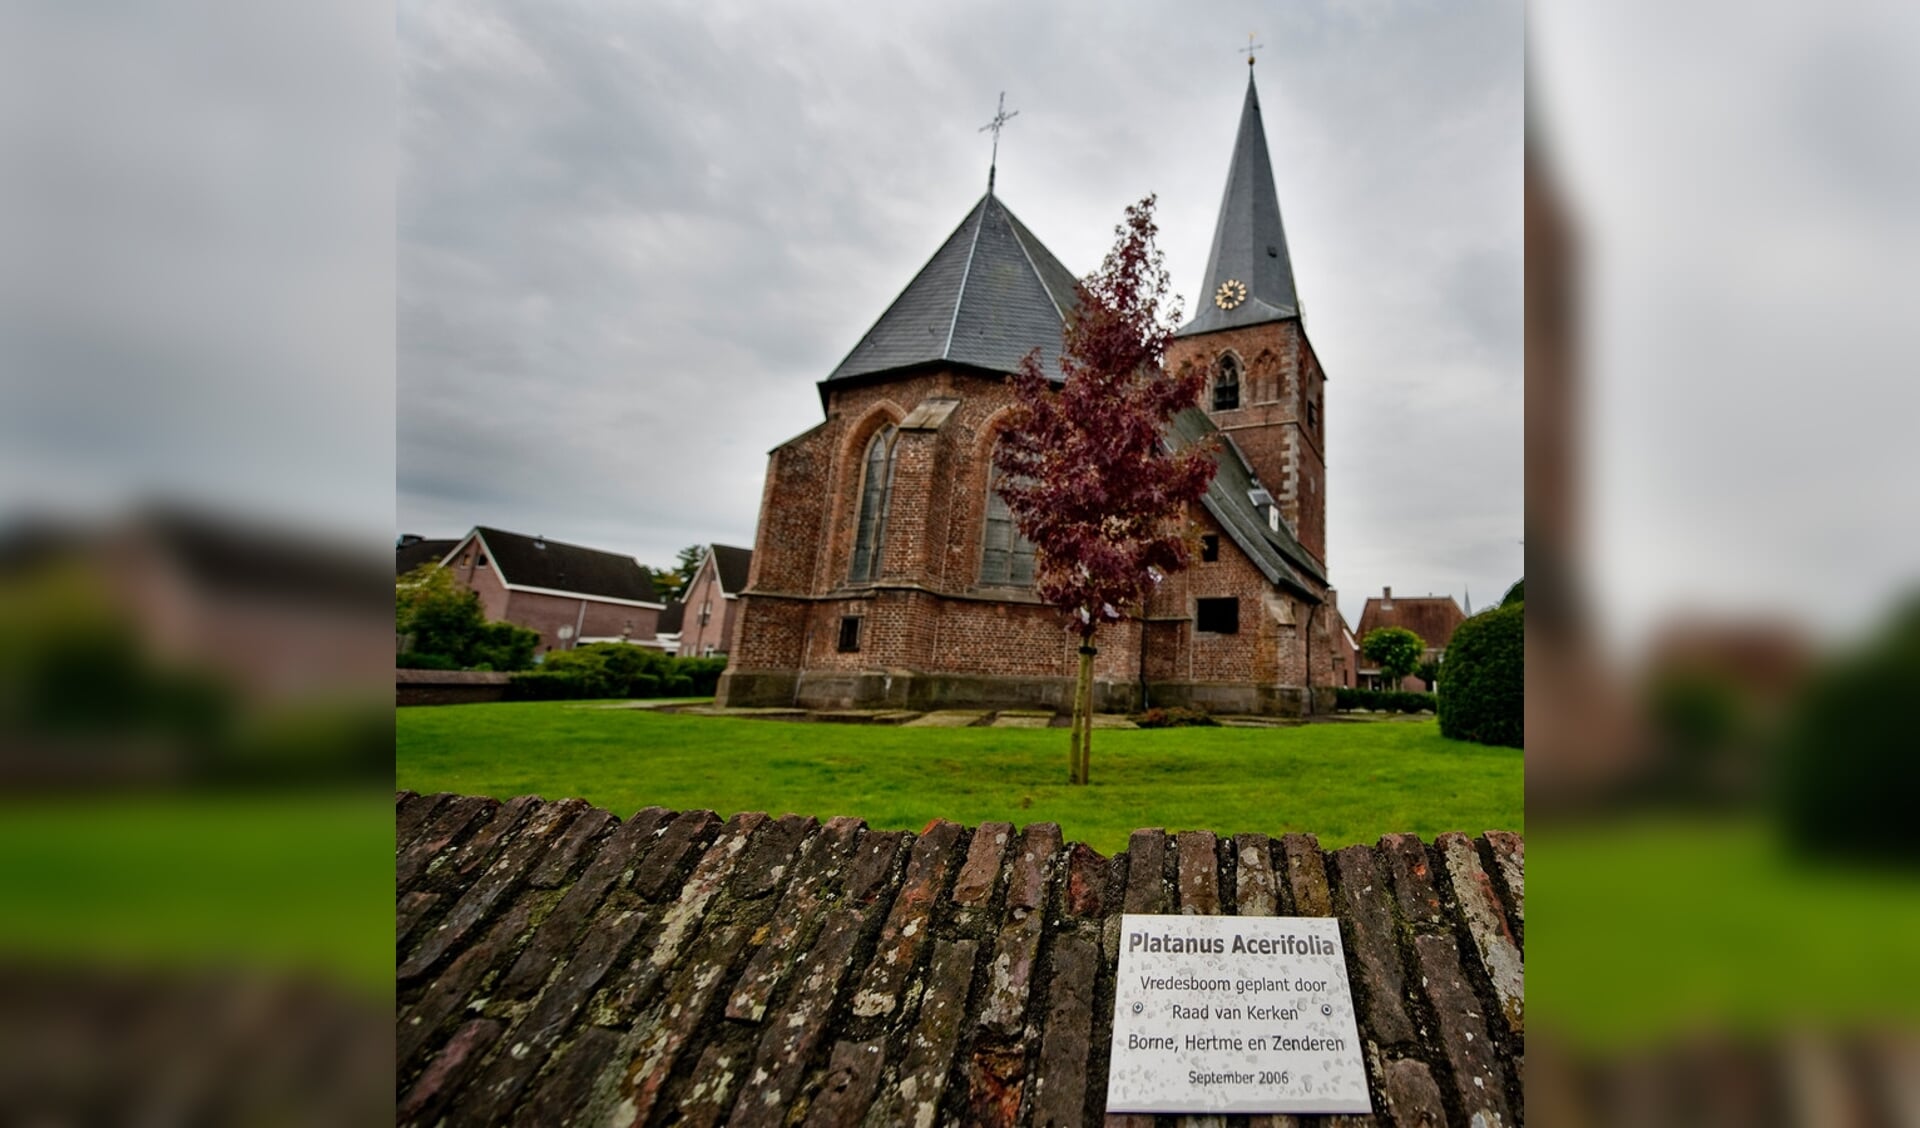 De Vredesboom, geplant door de Raad van Kerken in september 2006